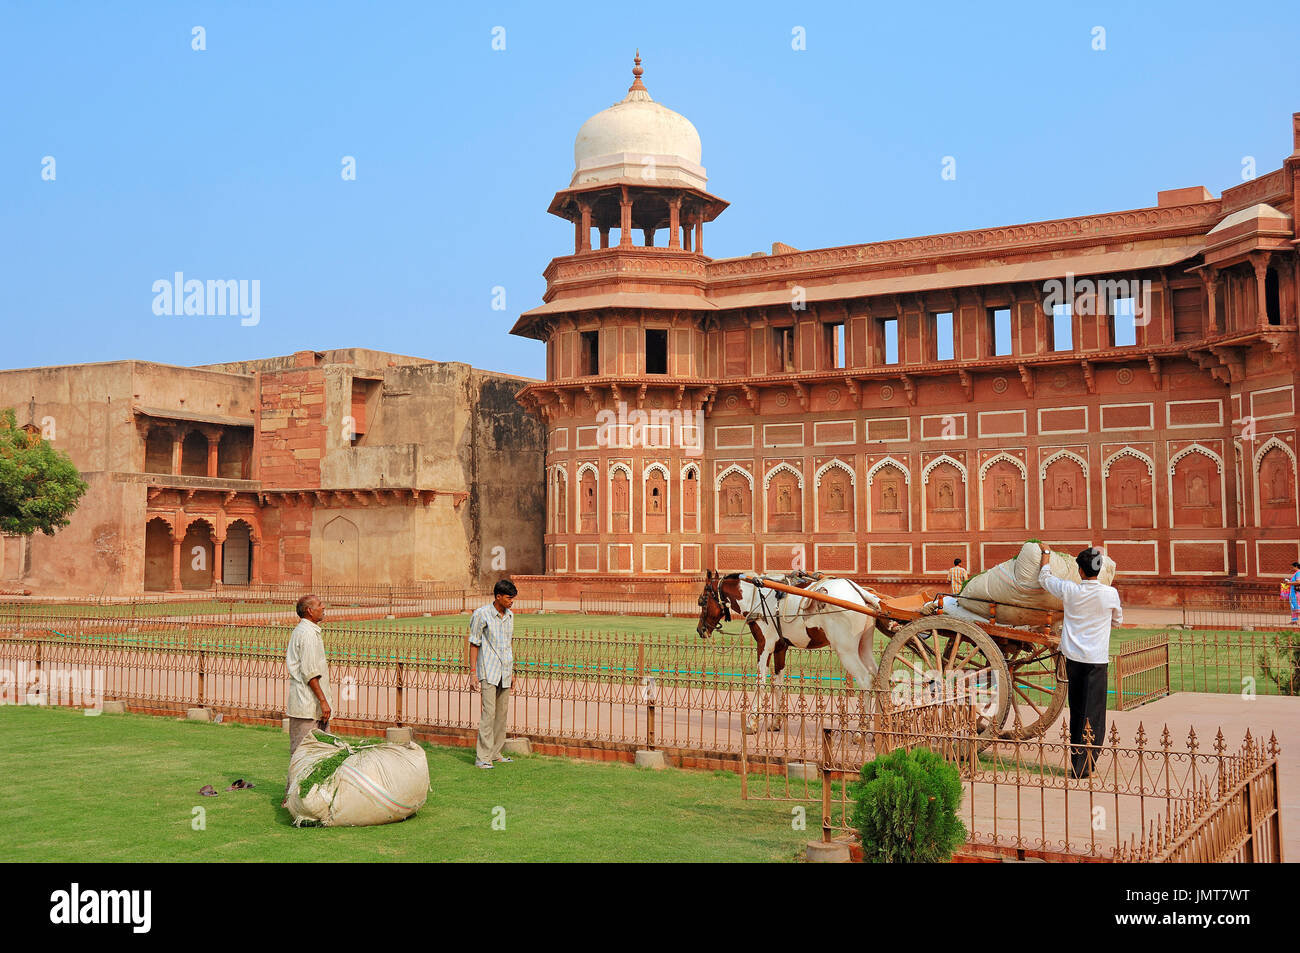 Men load horse cart, Red Fort, Agra, Uttar Pradesh, India | Maenner beladen Pferdekarren, Rotes Fort, Agra, Uttar Pradesh, Indien Stock Photo